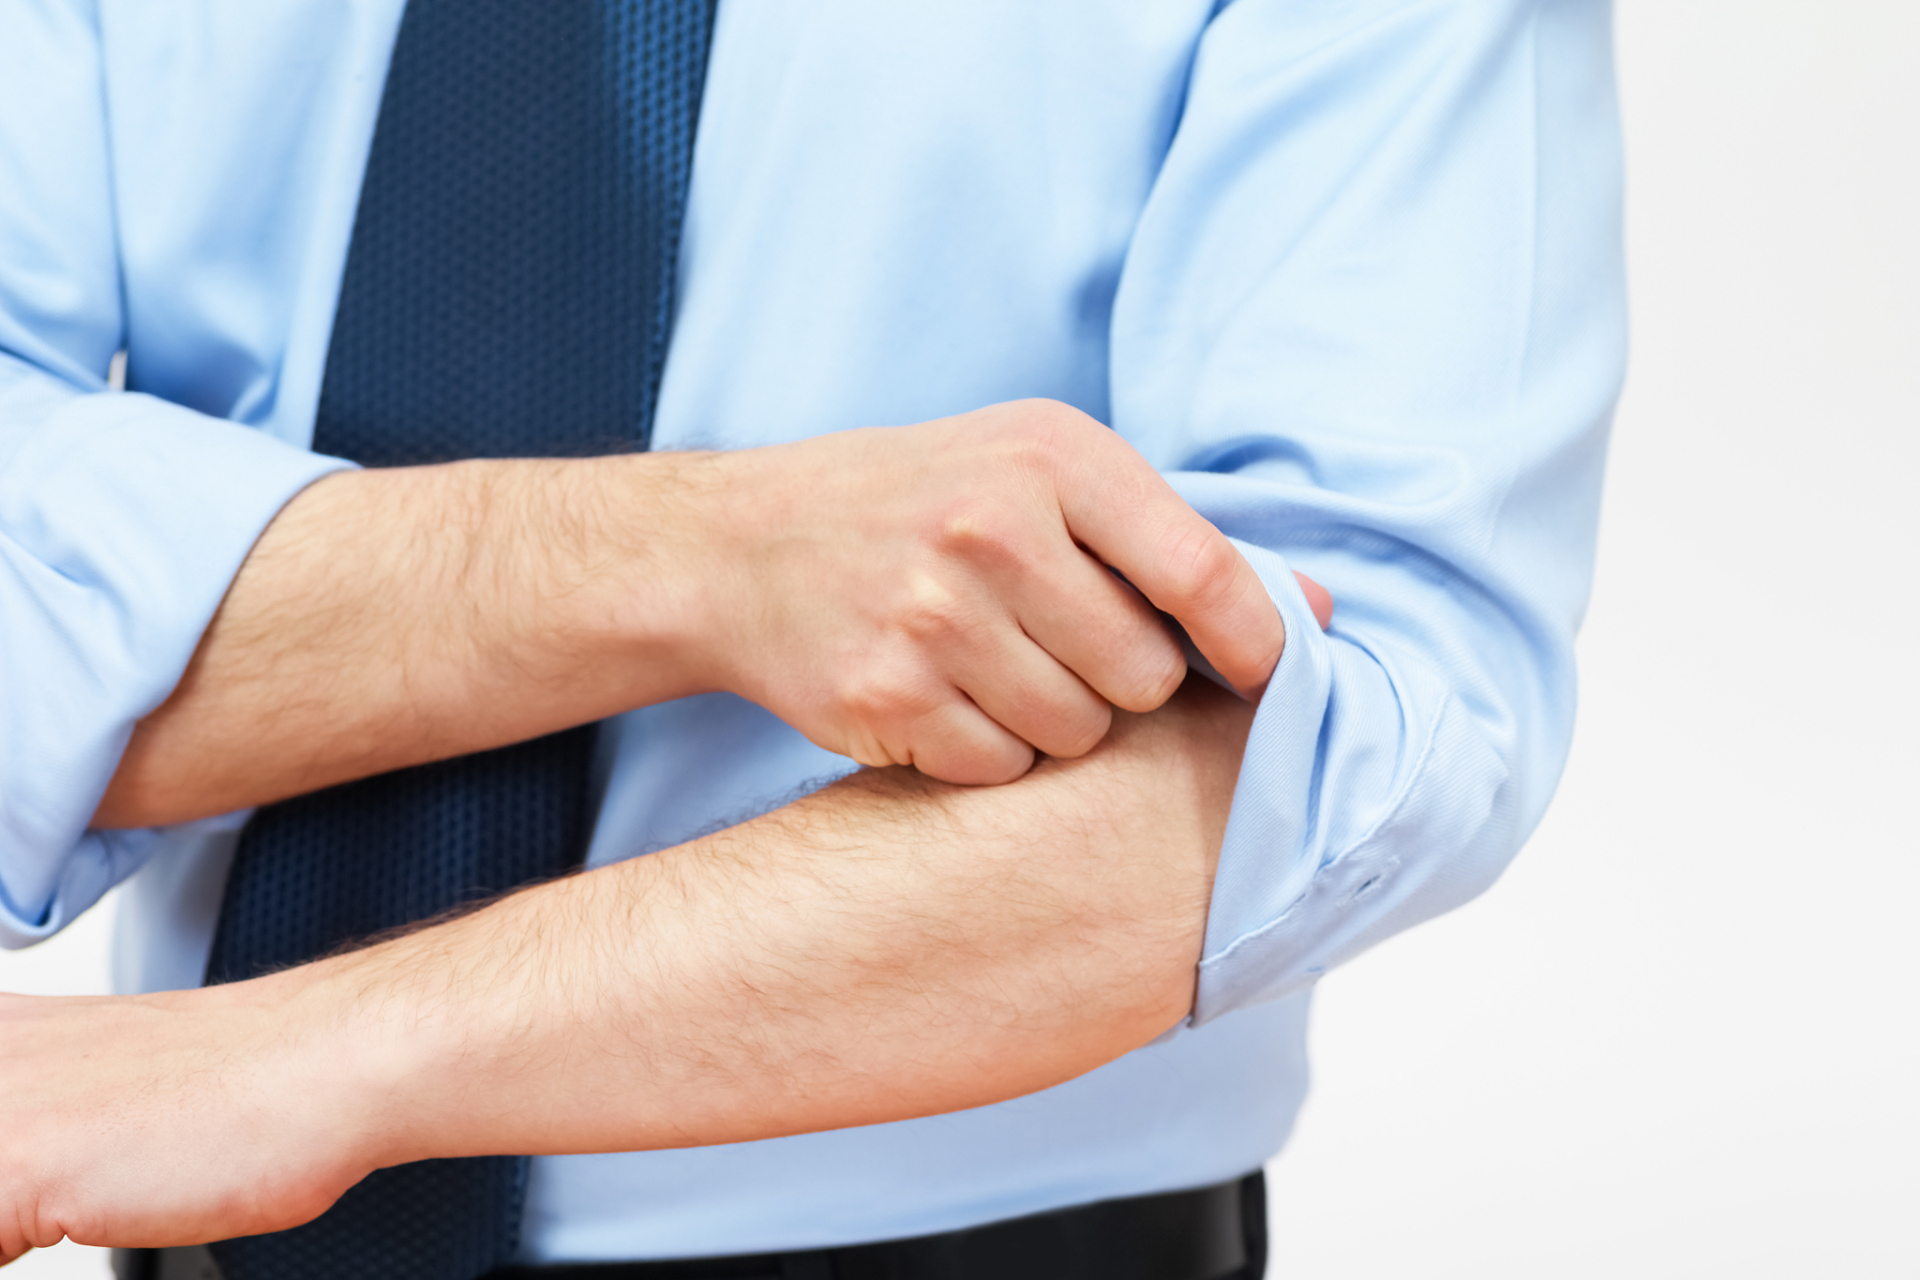 首先,过度使用手臂肌肉和骨骼可以导致疼痛的感觉